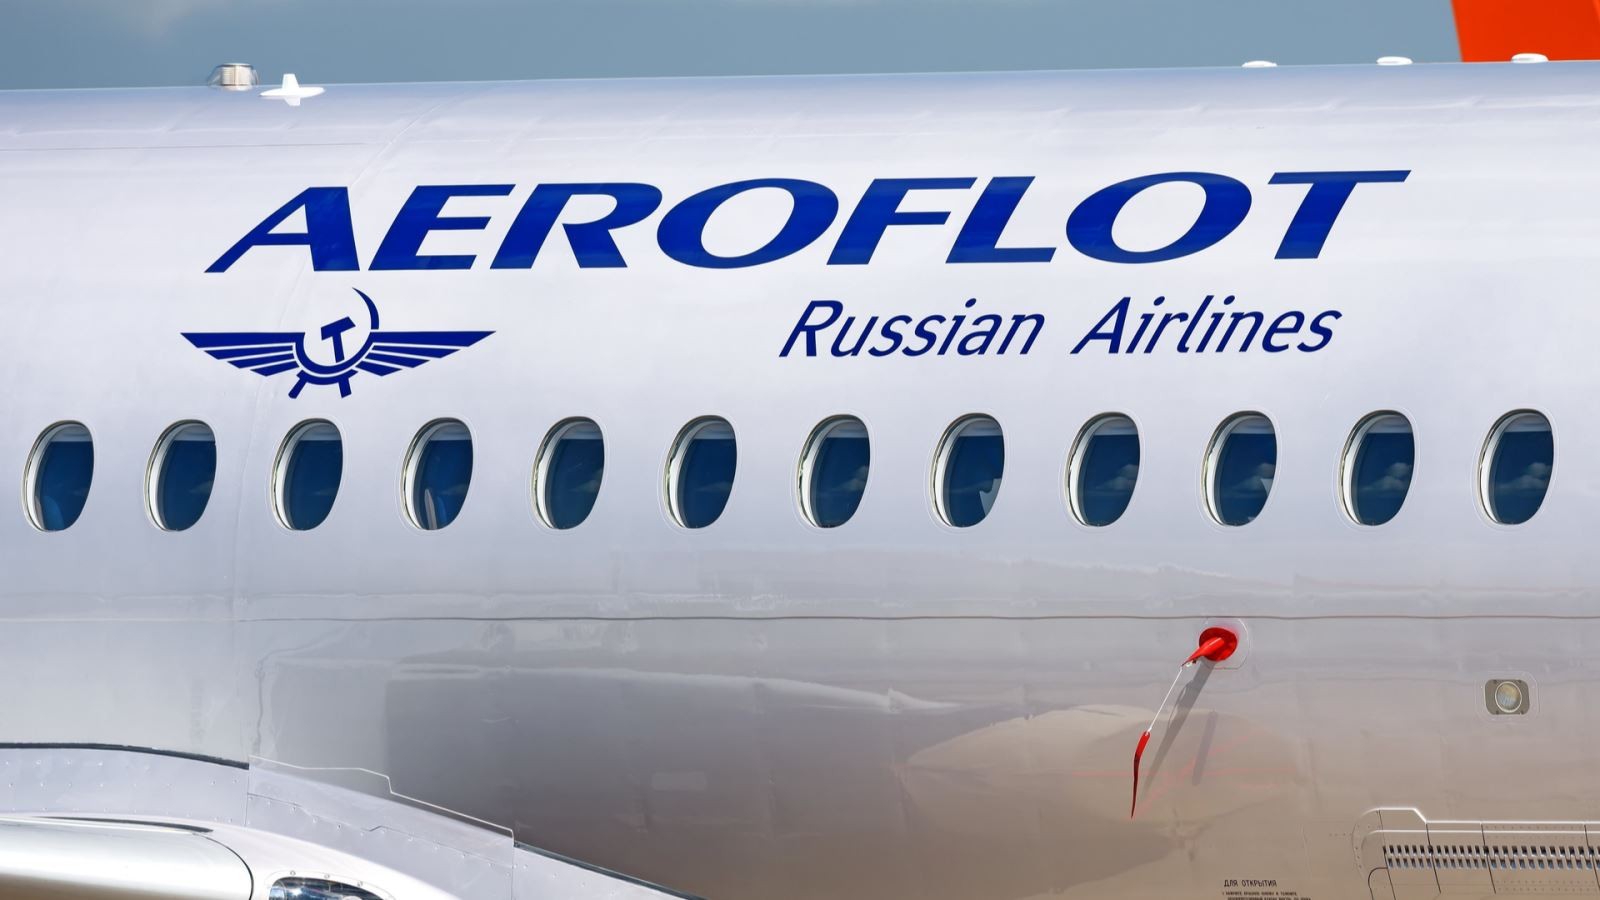 Nga: Hãng hàng không Aeroflot sẽ huy động 3 tỷ USD thông qua phát hành cổ phiếu khẩn cấp